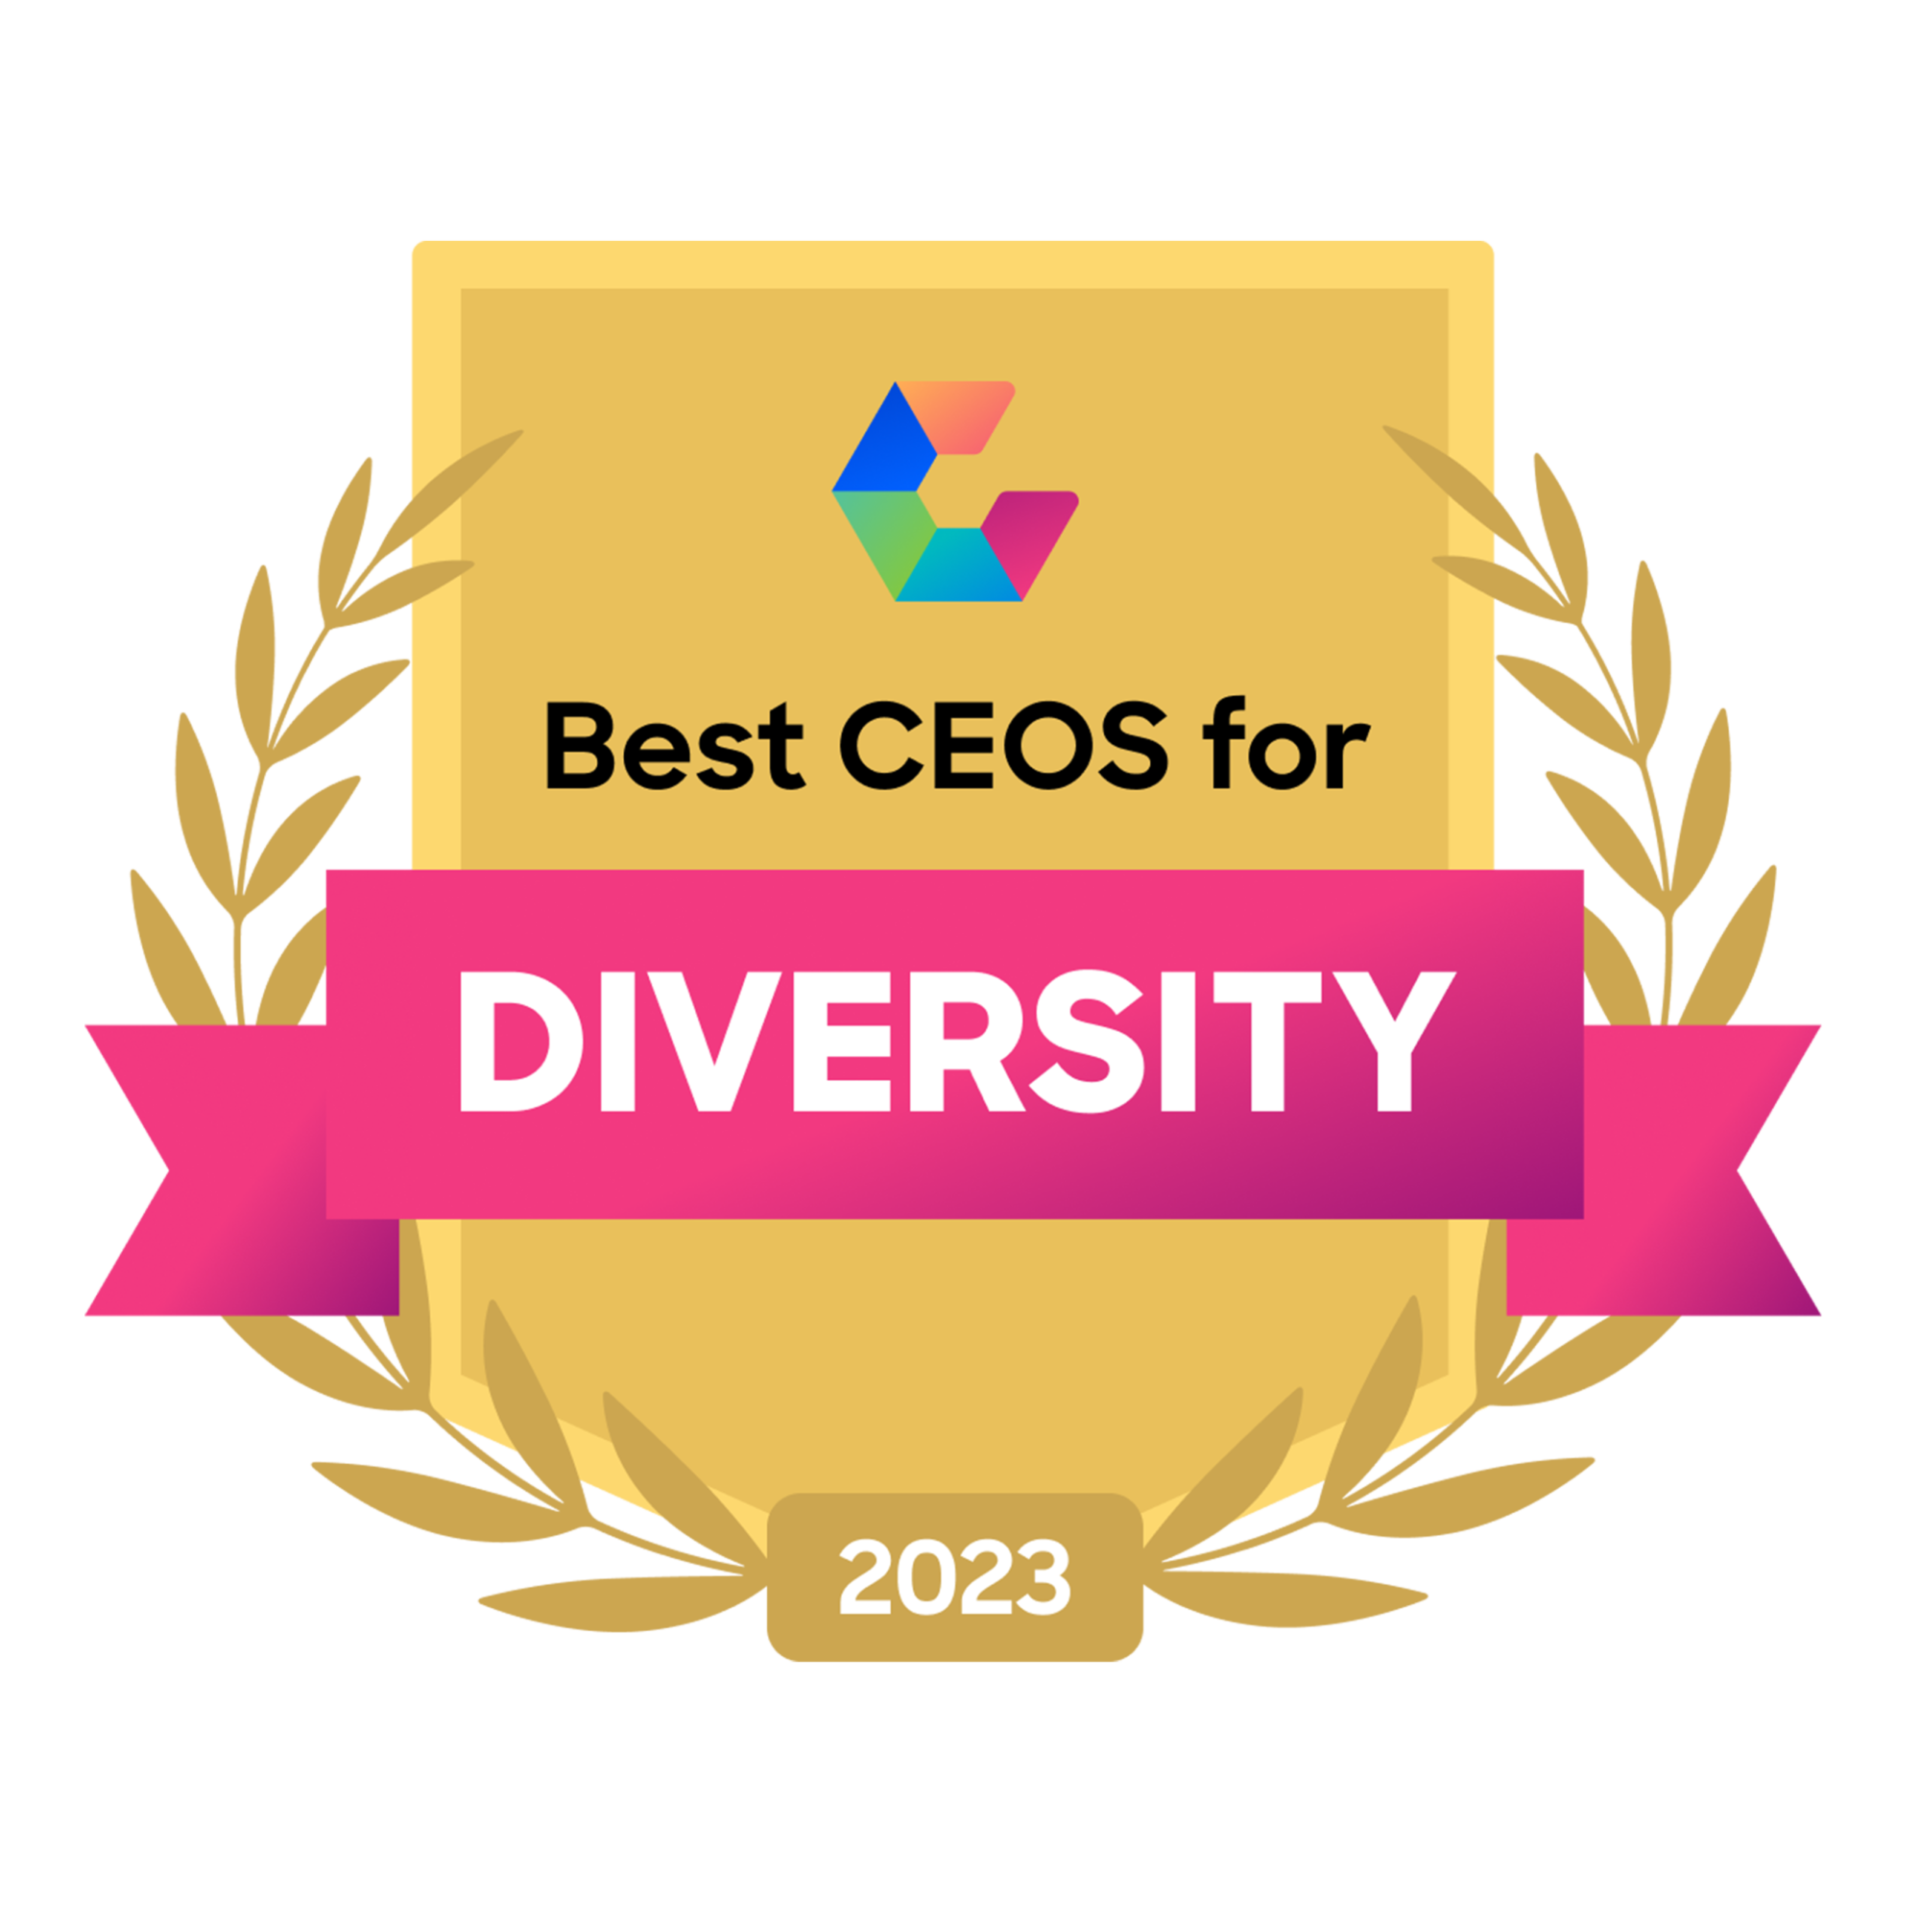 Die besten CEOs für Diversität 2023 (Best CEOs for Diversity 2023)